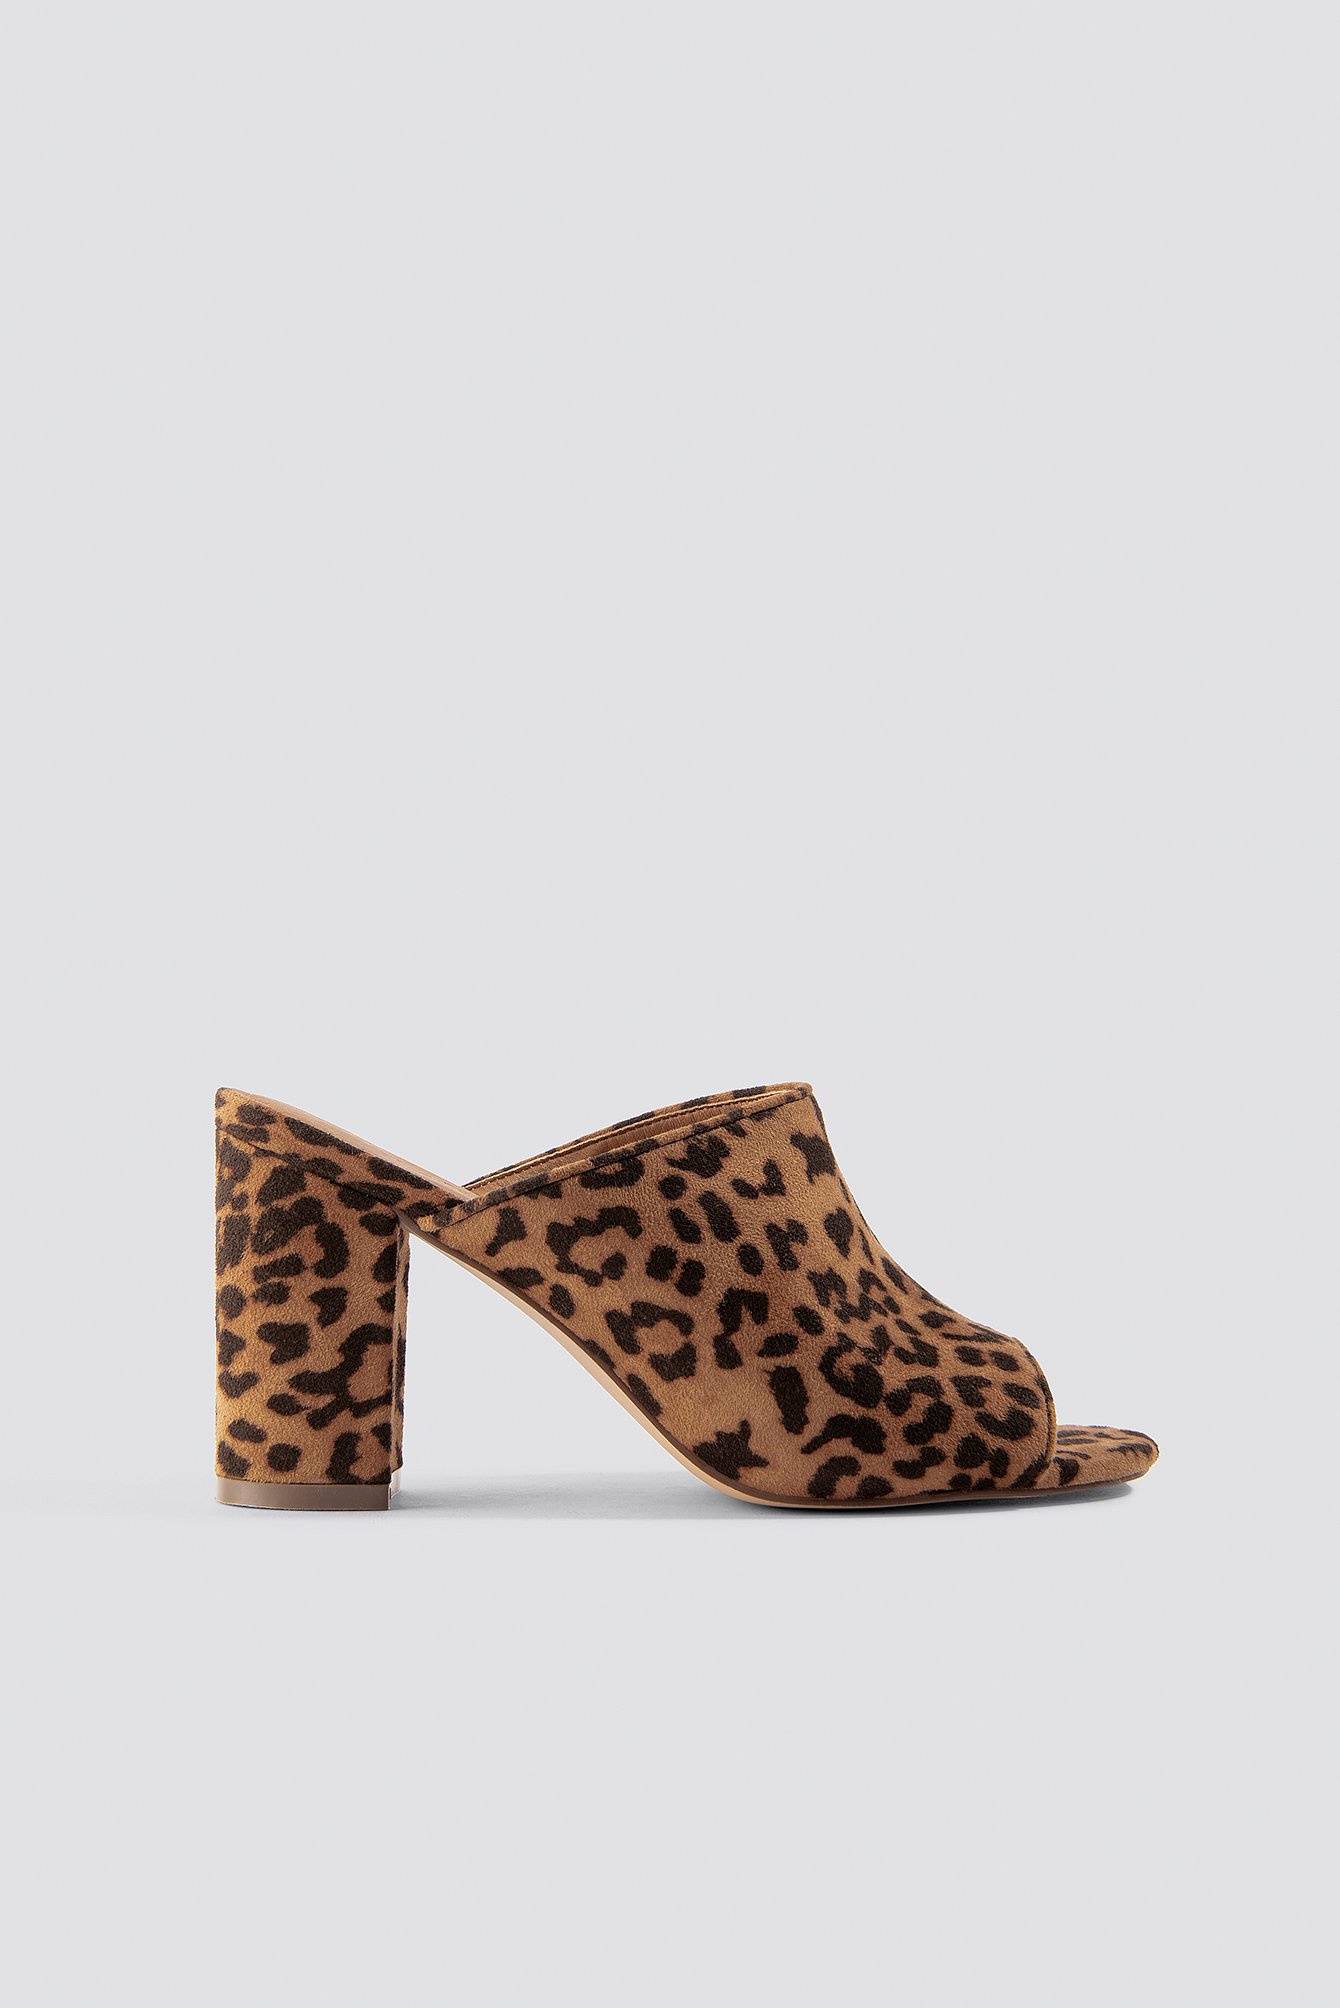 leopard mules heels